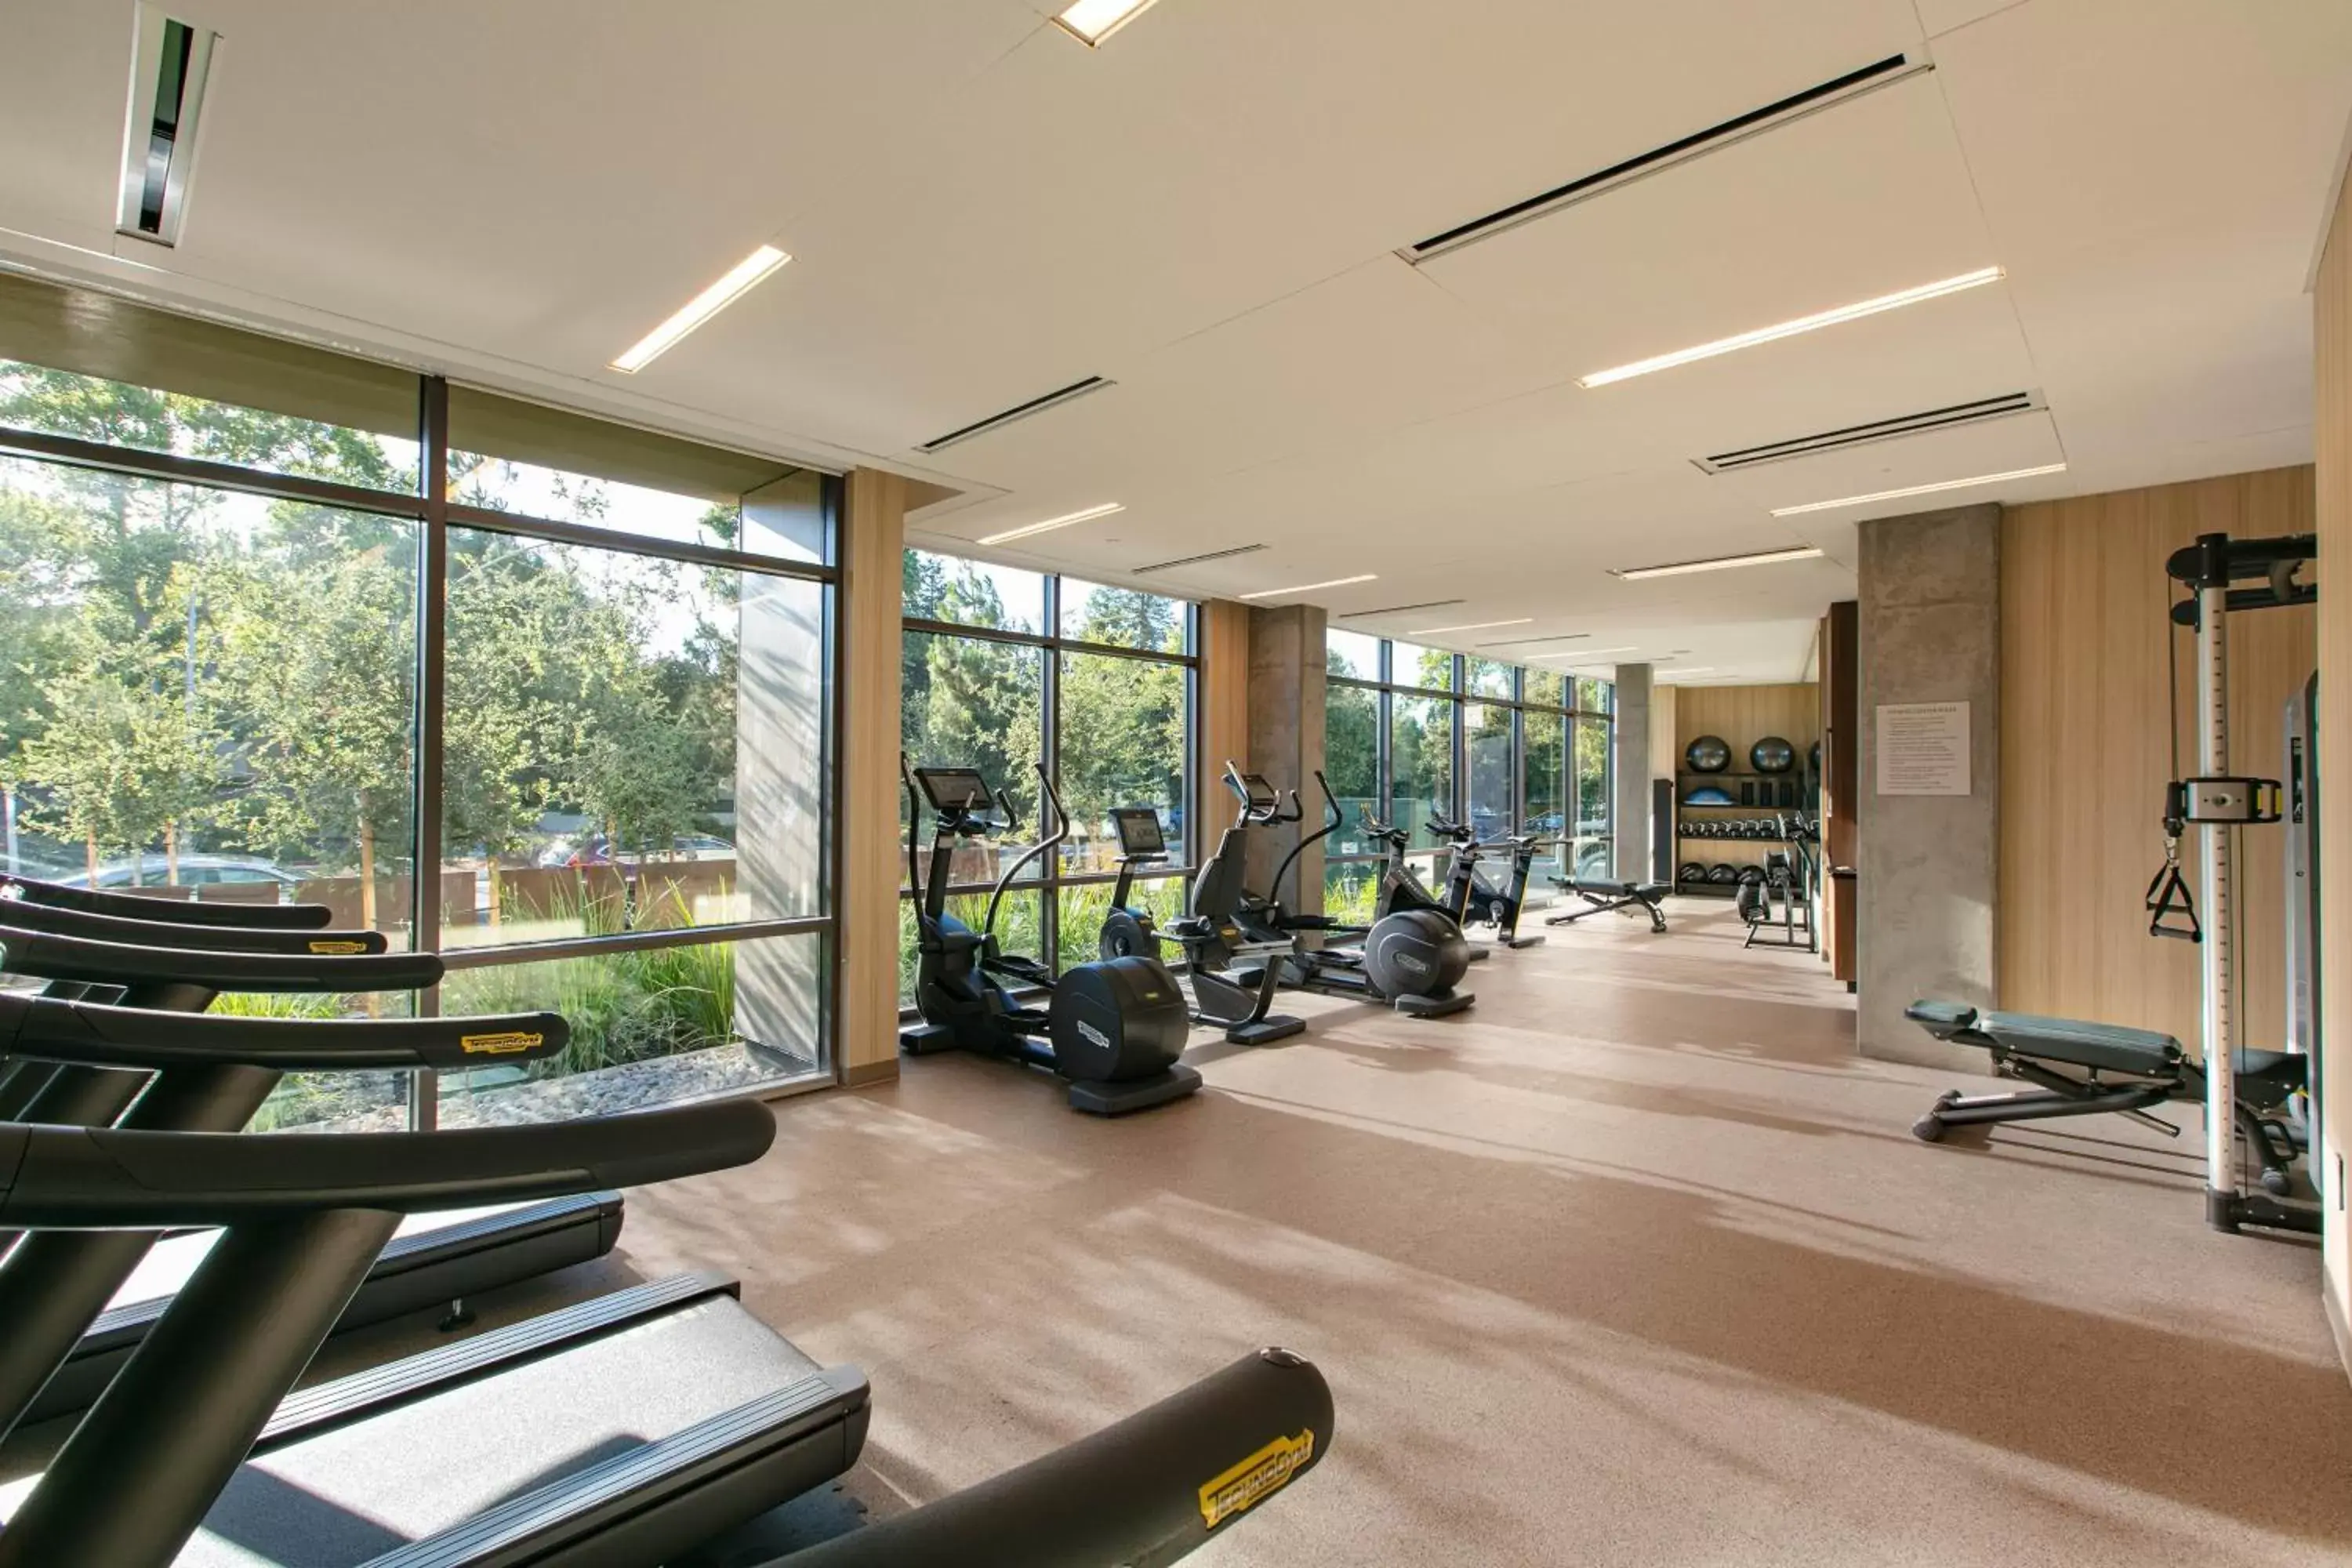 Fitness centre/facilities, Fitness Center/Facilities in Hotel Citrine, Palo Alto, a Tribute Portfolio Hotel